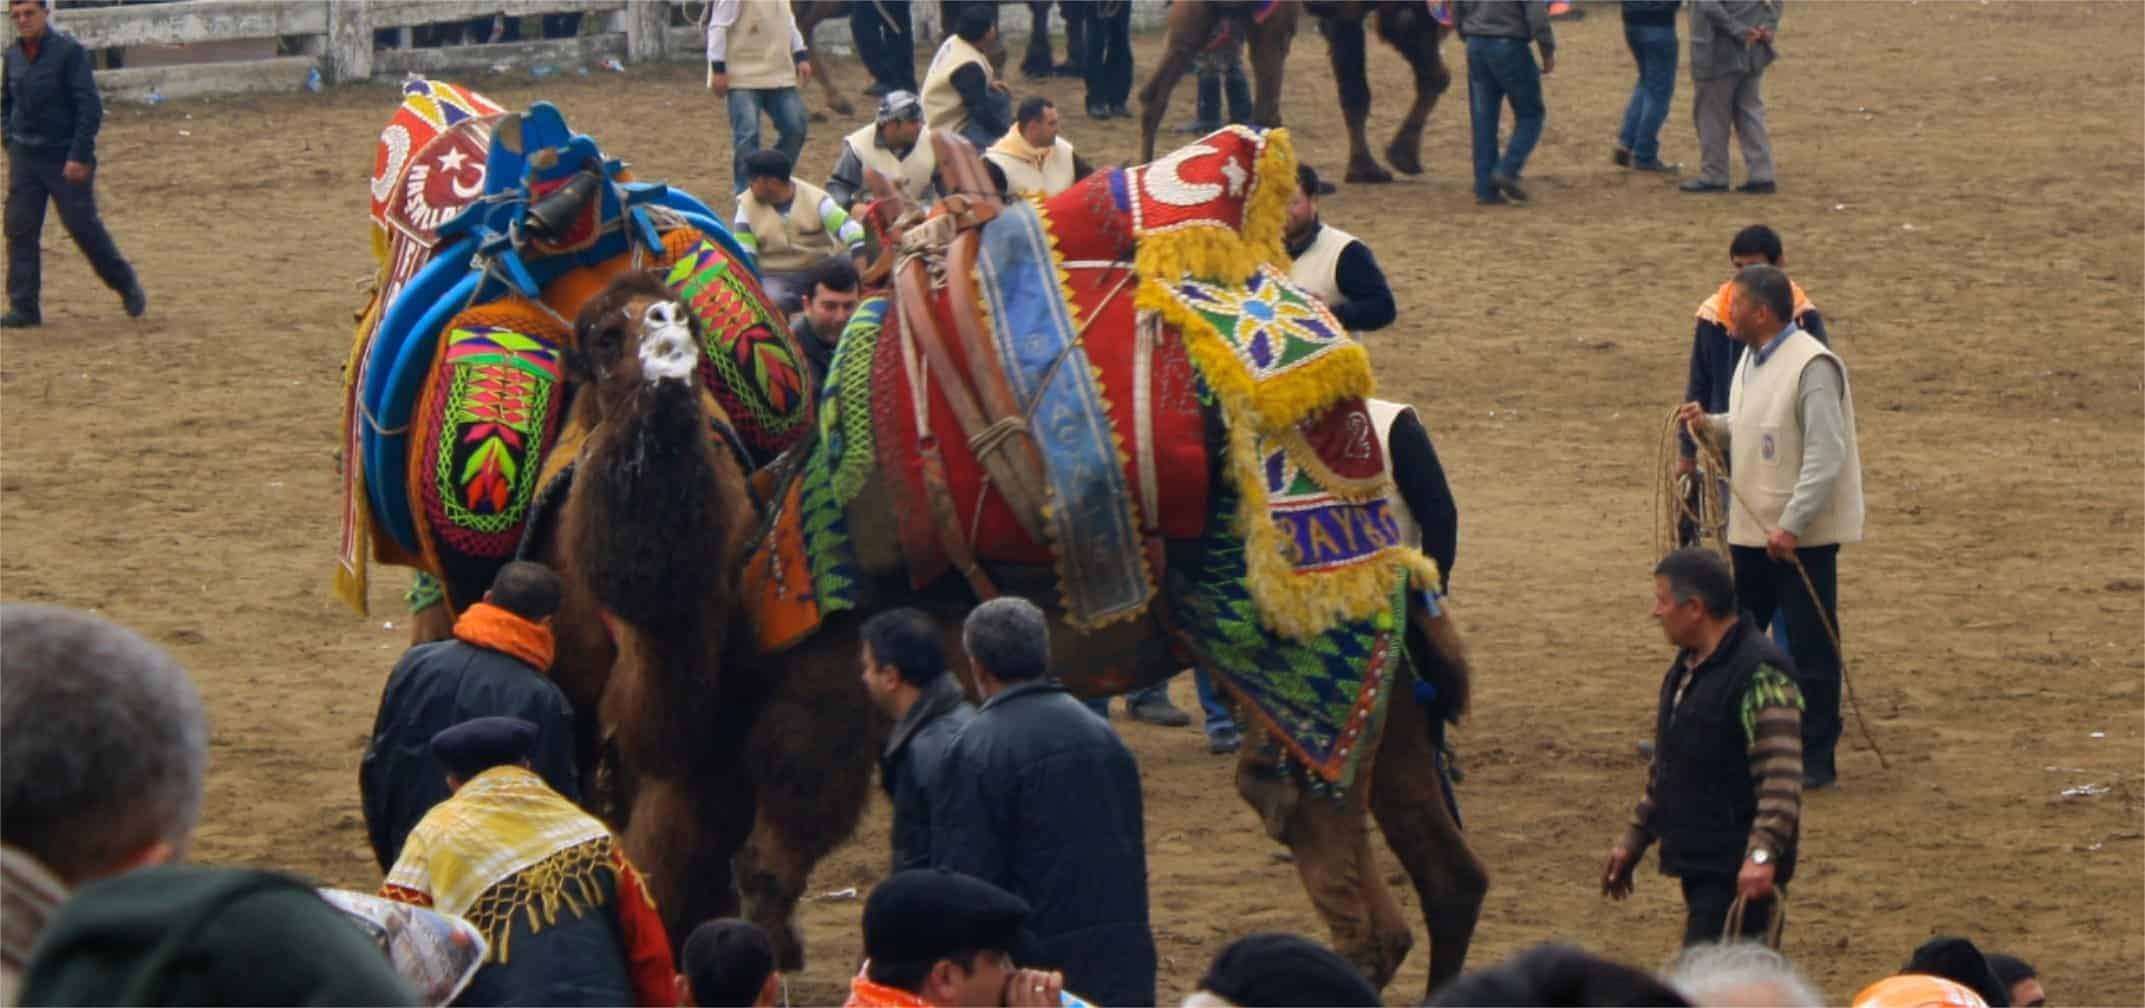 Camel wrestling in Turkey